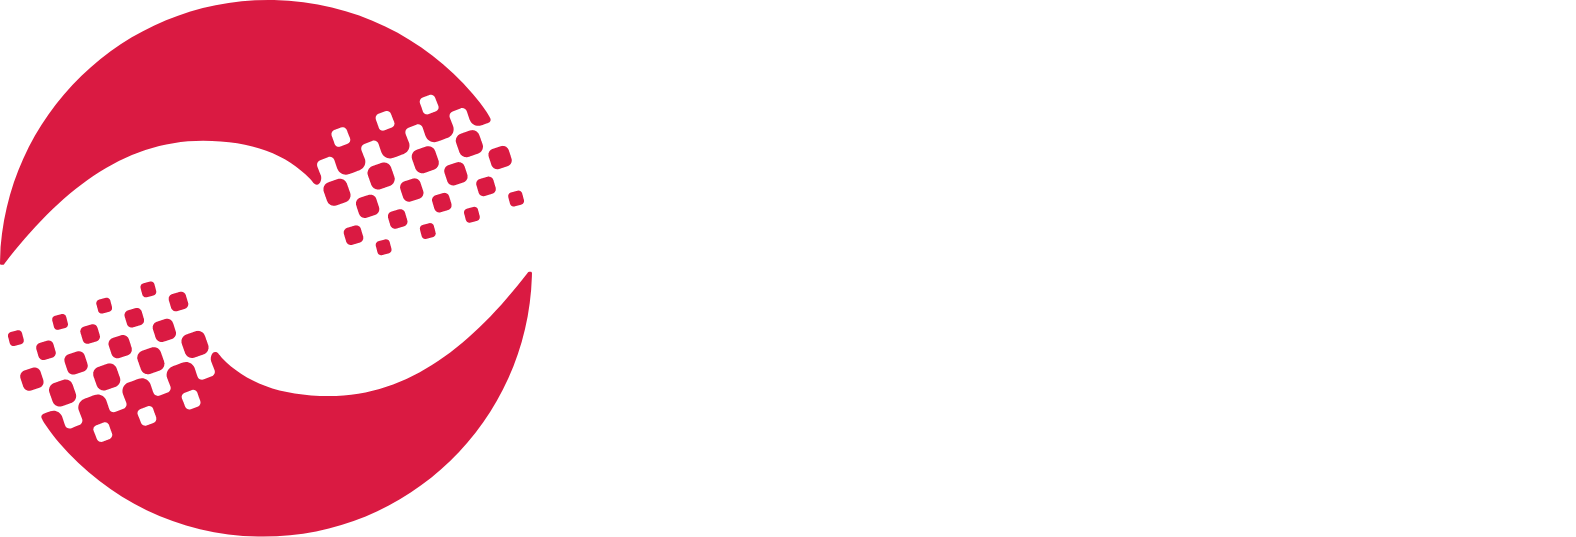 Digital Turbine
 logo large for dark backgrounds (transparent PNG)